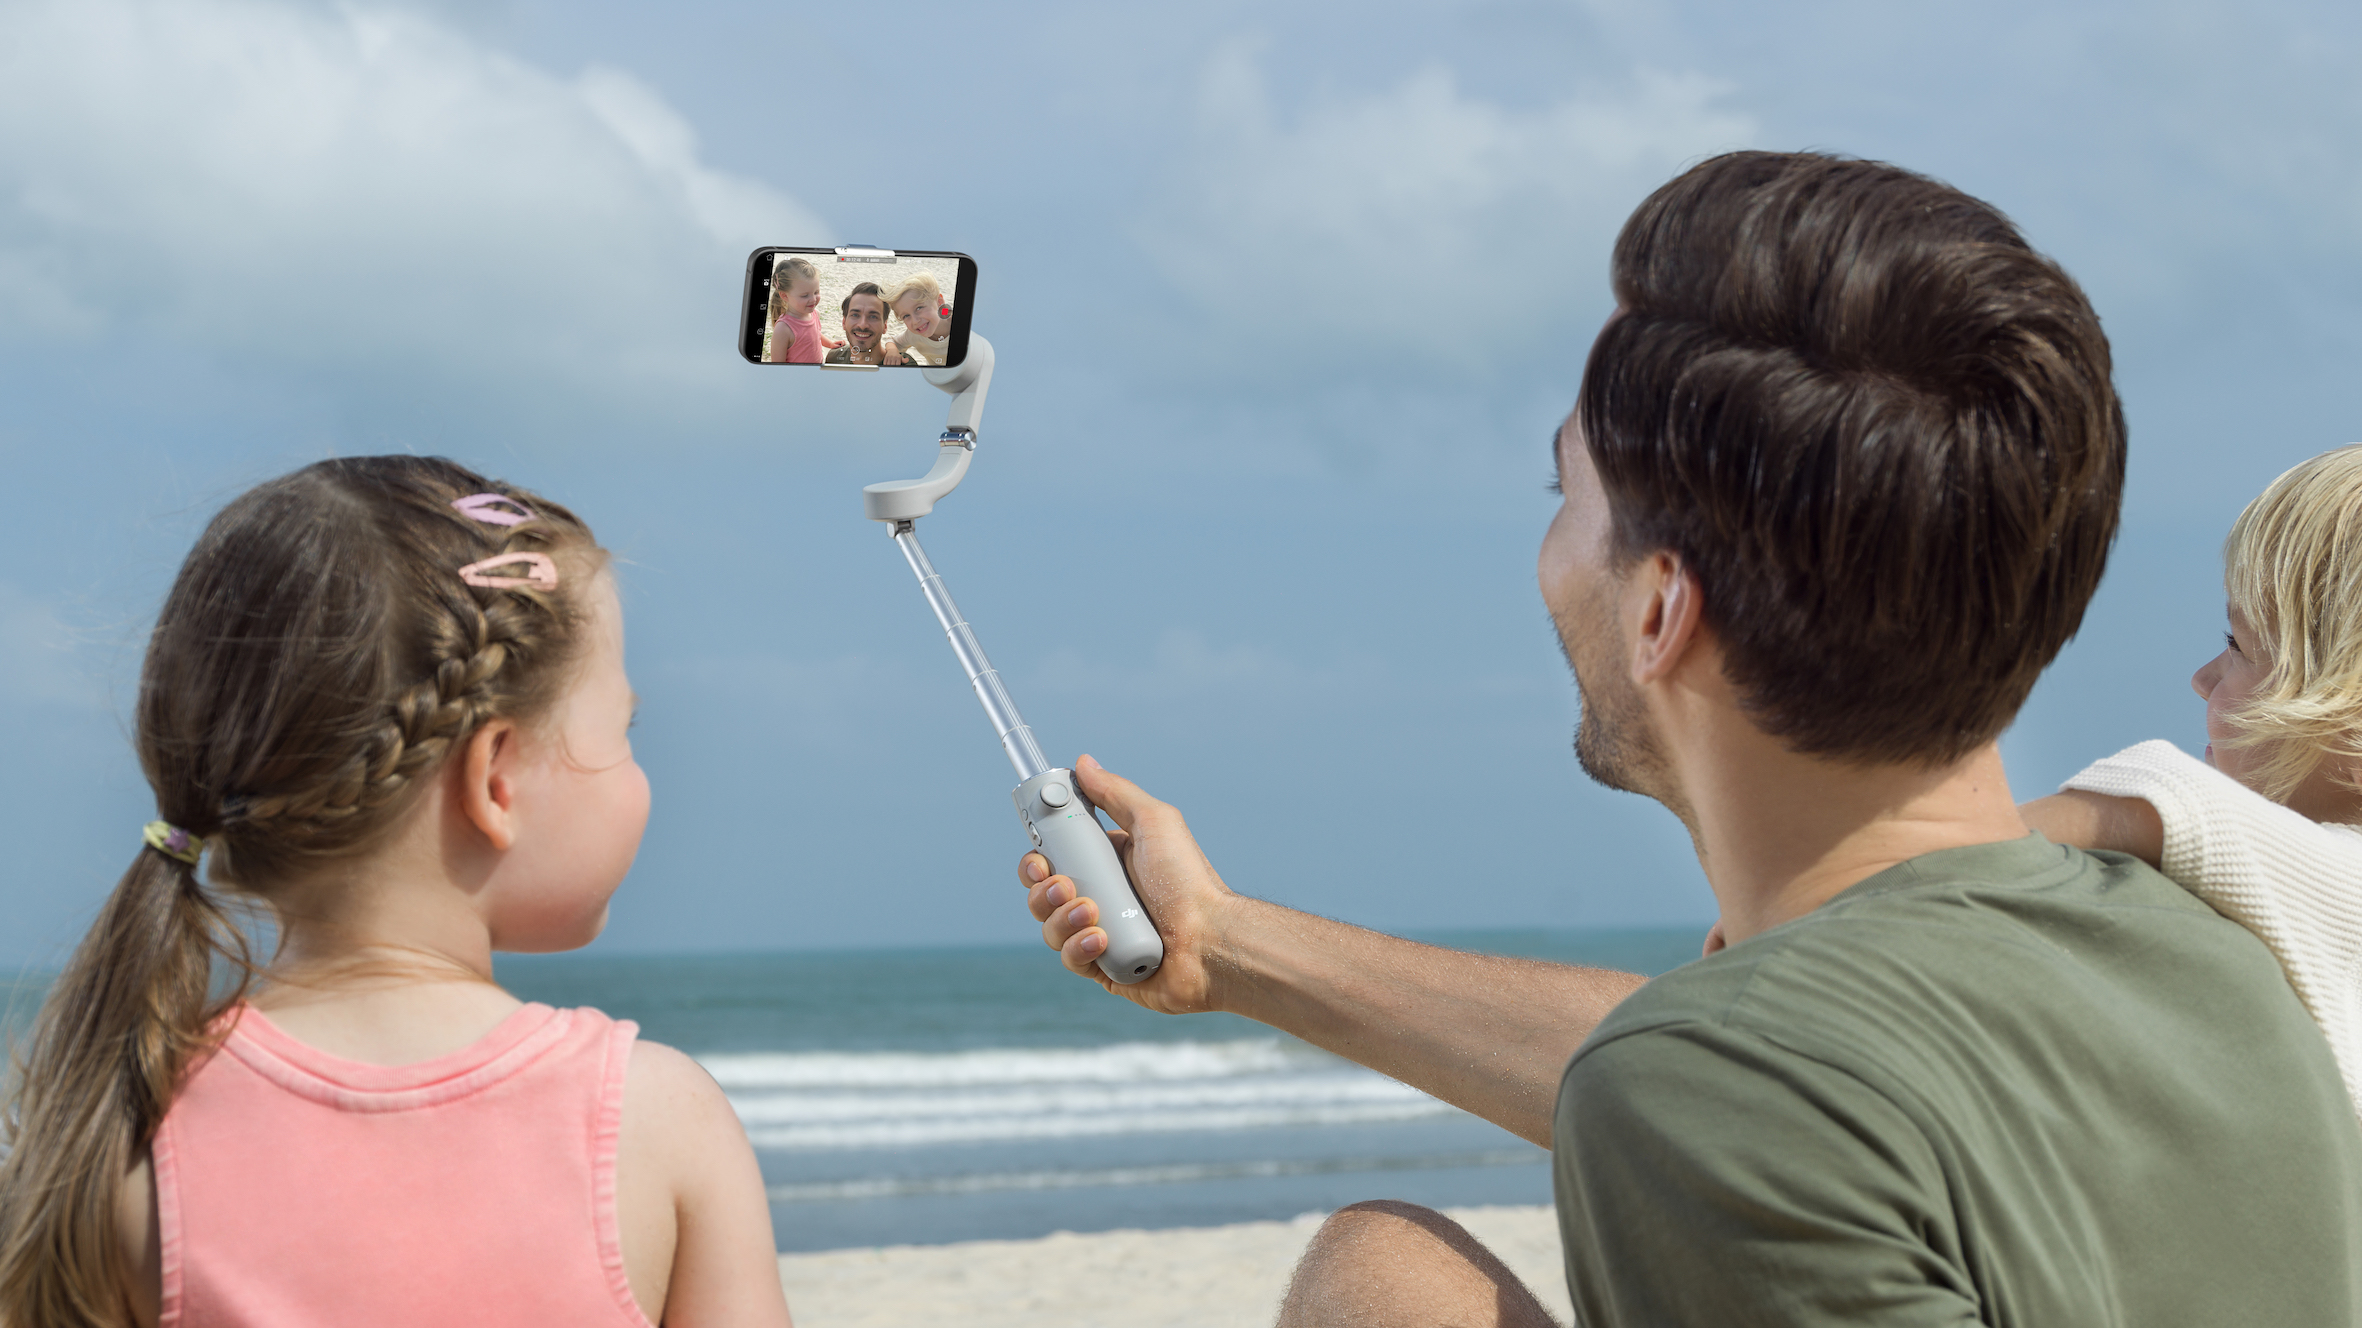 Lançamento do Gimbal OM 5, o novo estabilizador para selfies da DJI!  blog post